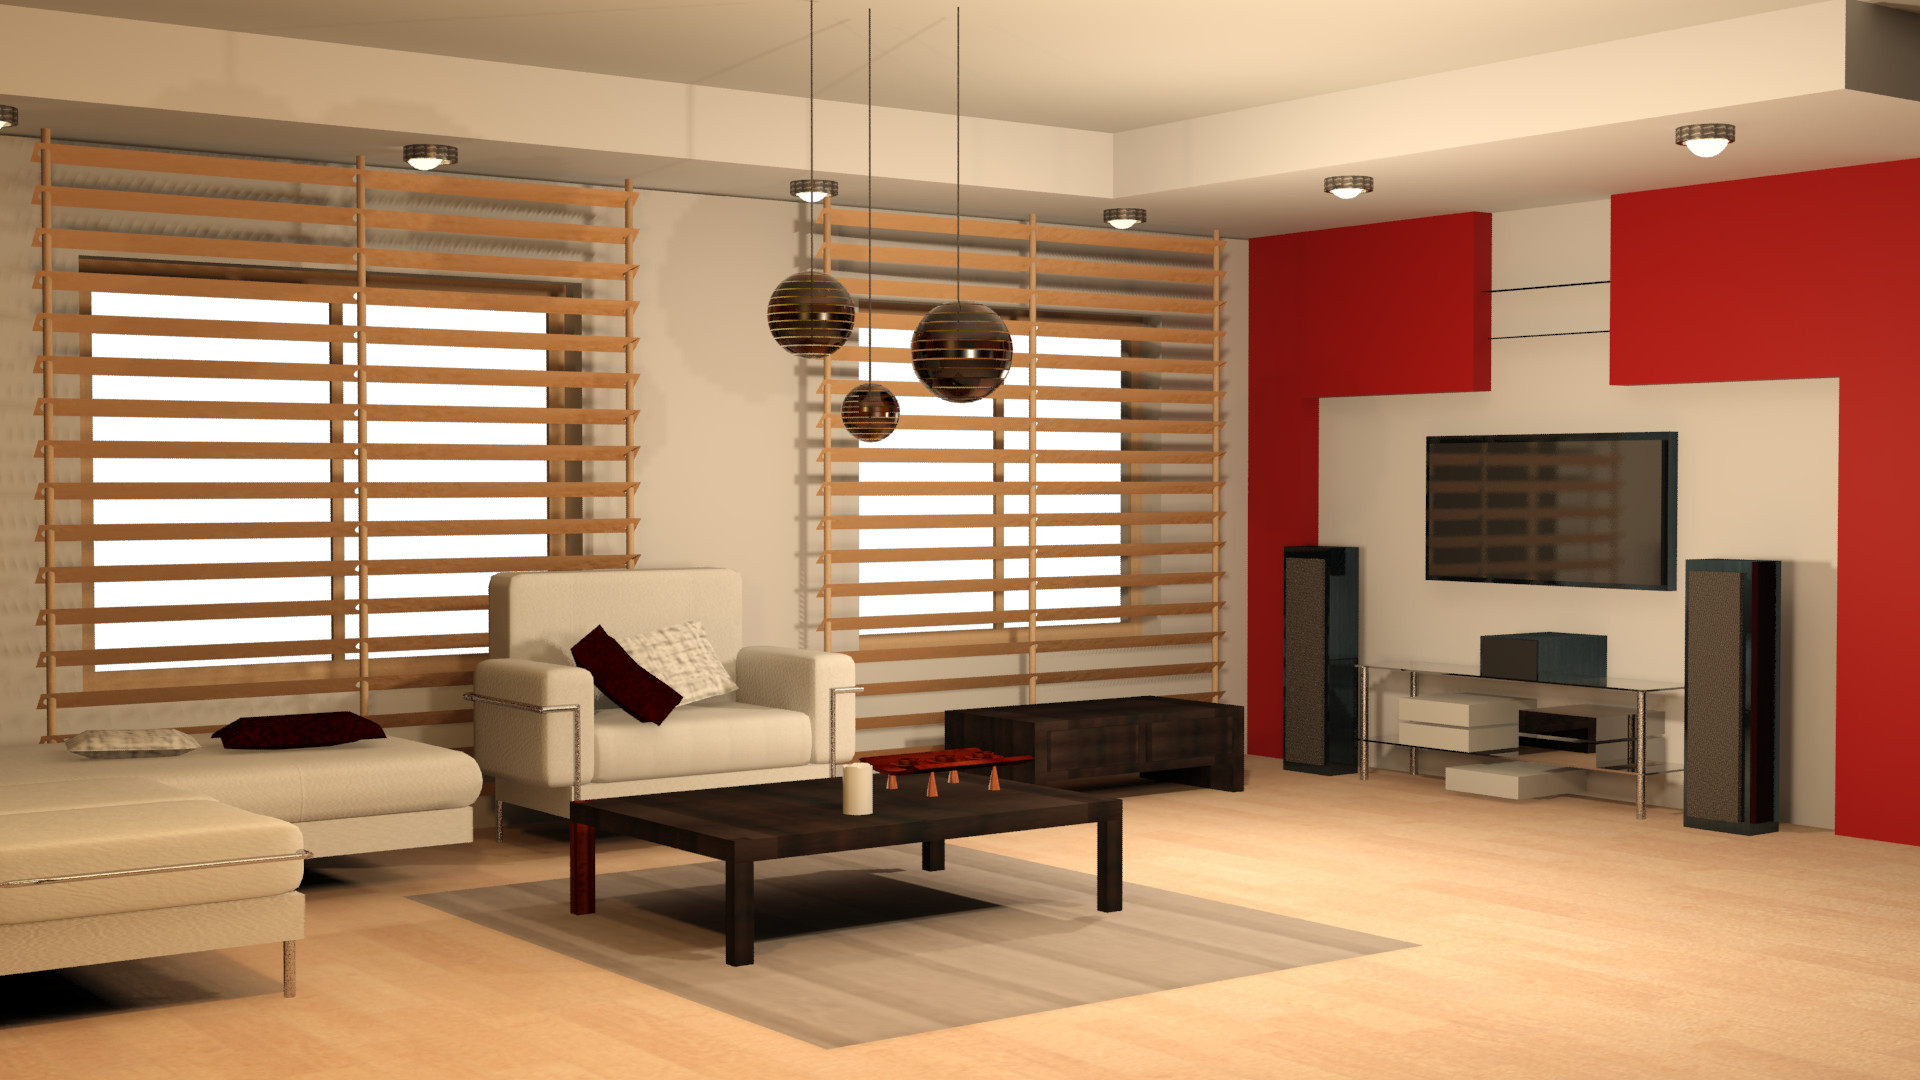 ArtStation - 3d interior designing